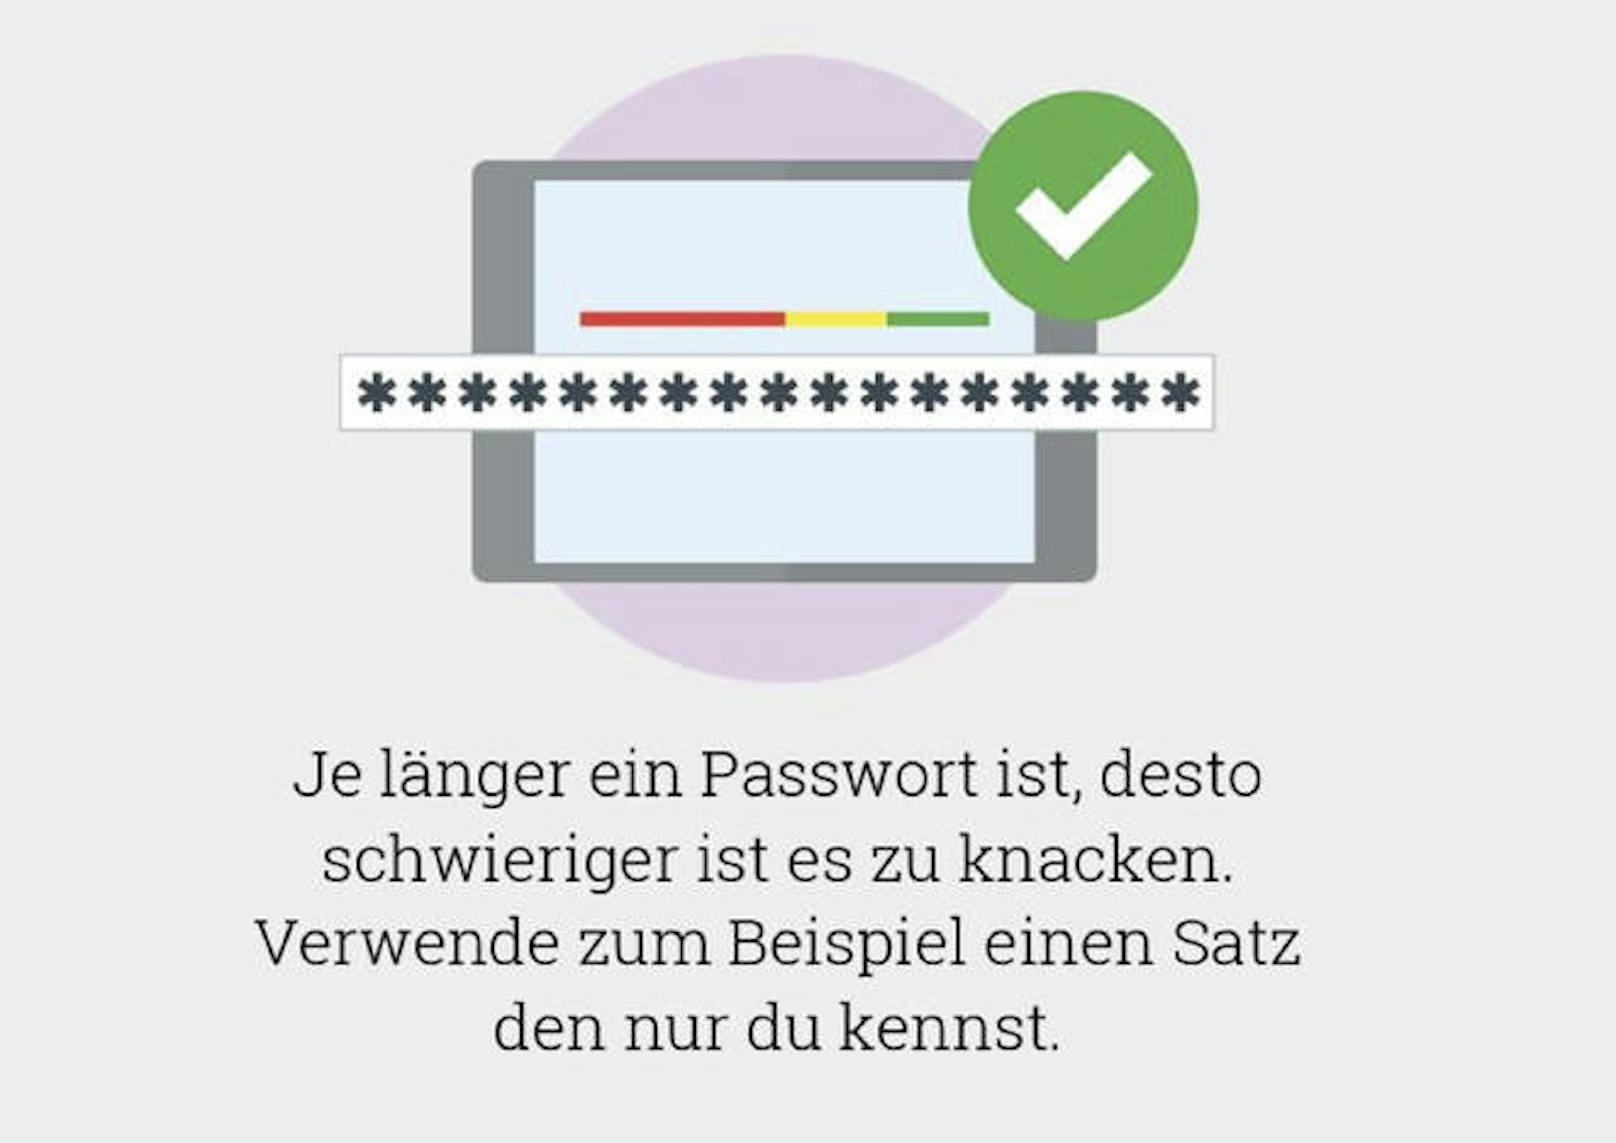 <b>Platz 5:</b> "hallo" ist das fünfhäufigste Passwort der Österreicher.